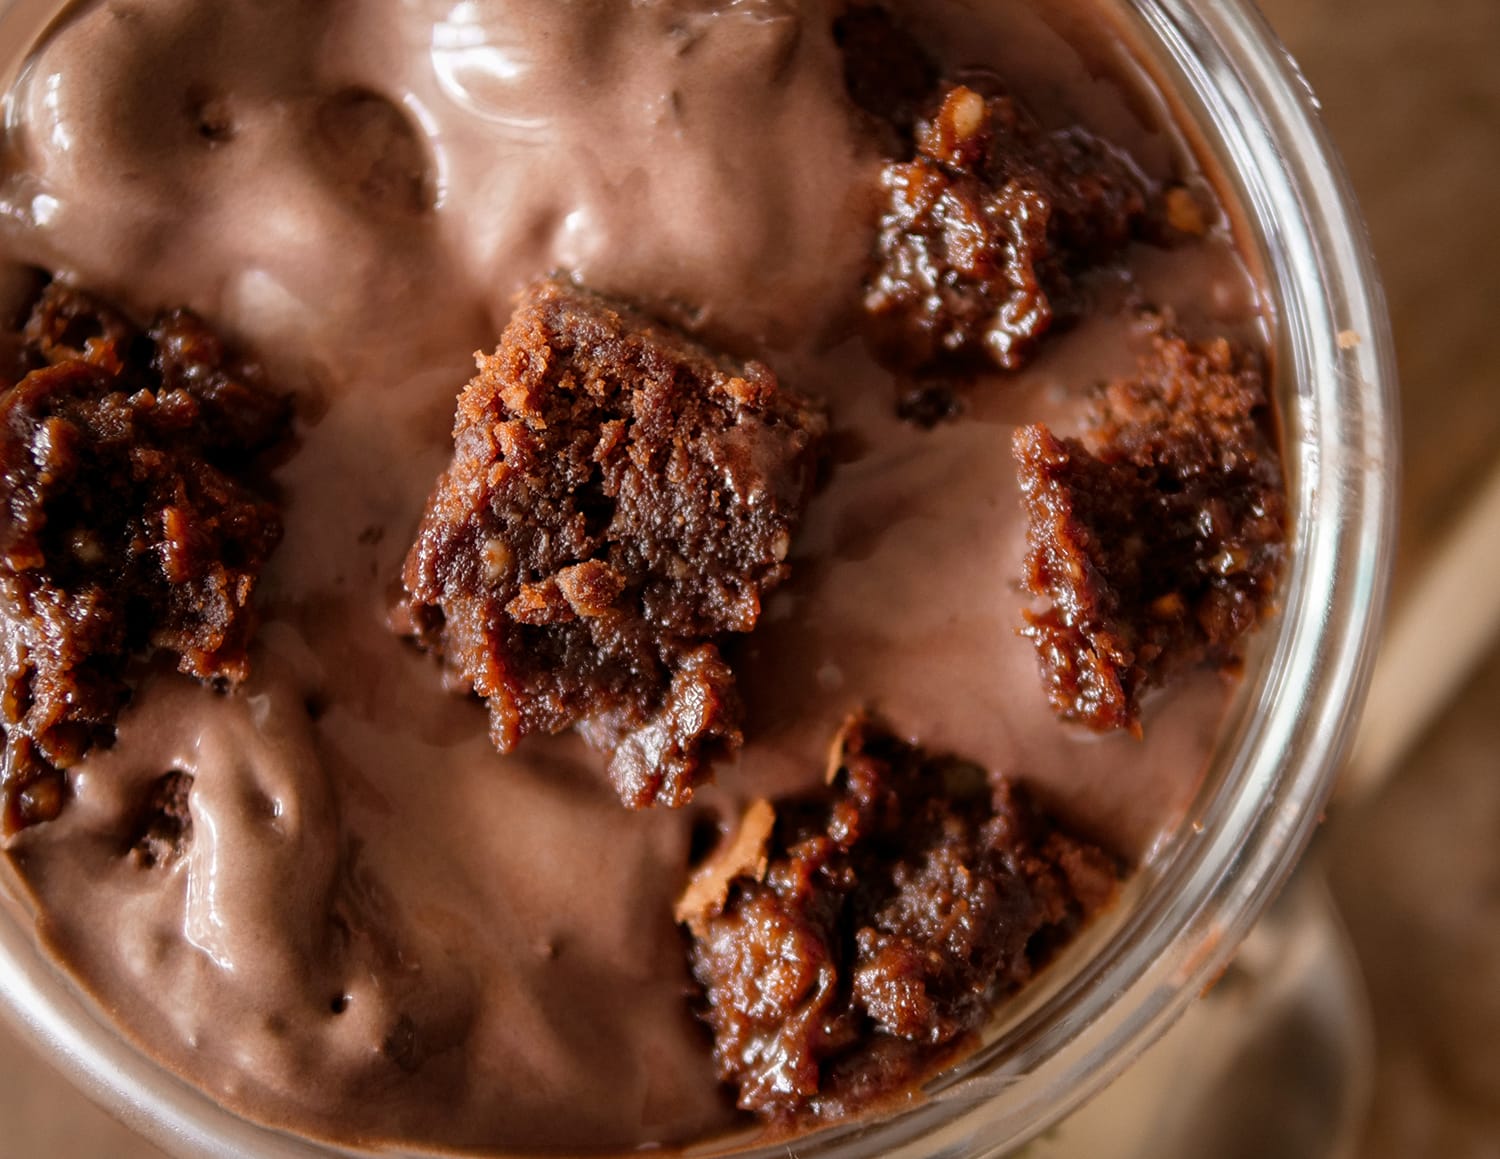 Recette de glace au chocolat et brownie avec Cookit de Bosch